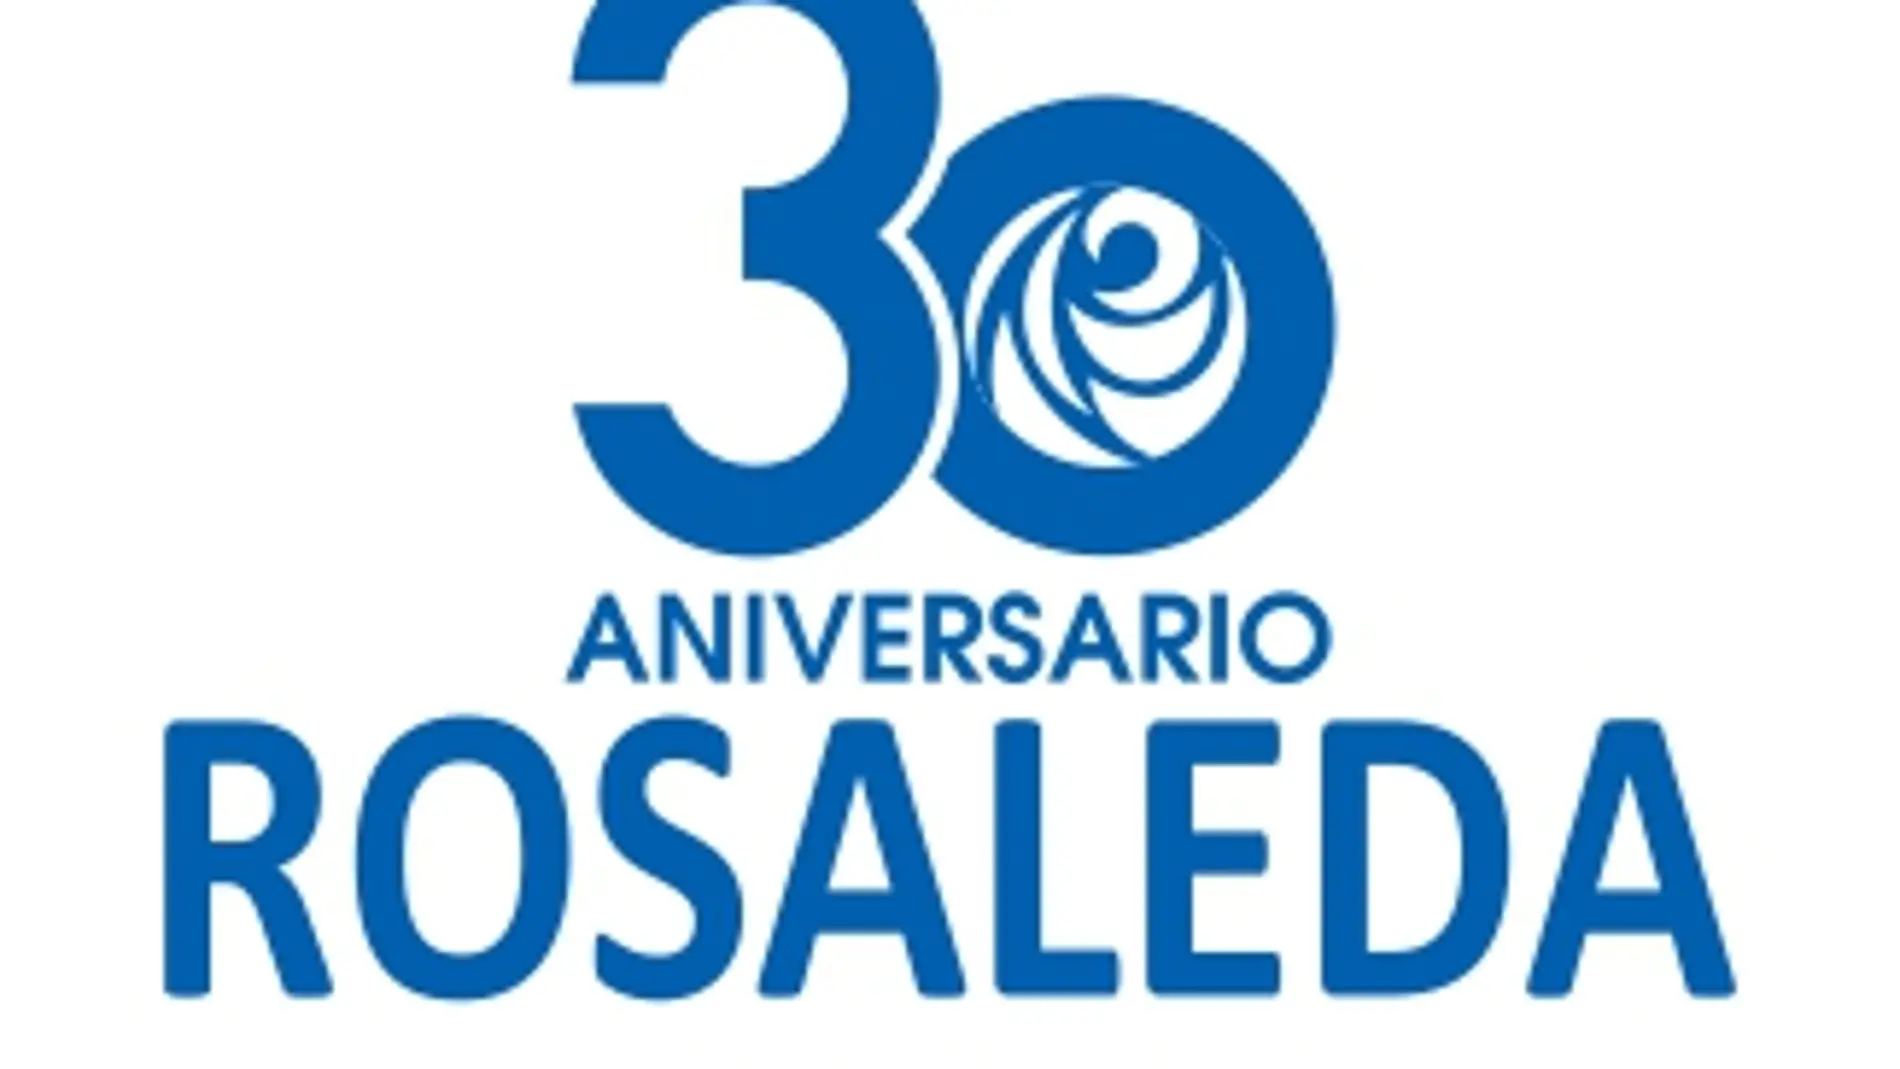 El Centro Comercial Rosaleda celebra 30 años de éxito con un mes de celebración especial